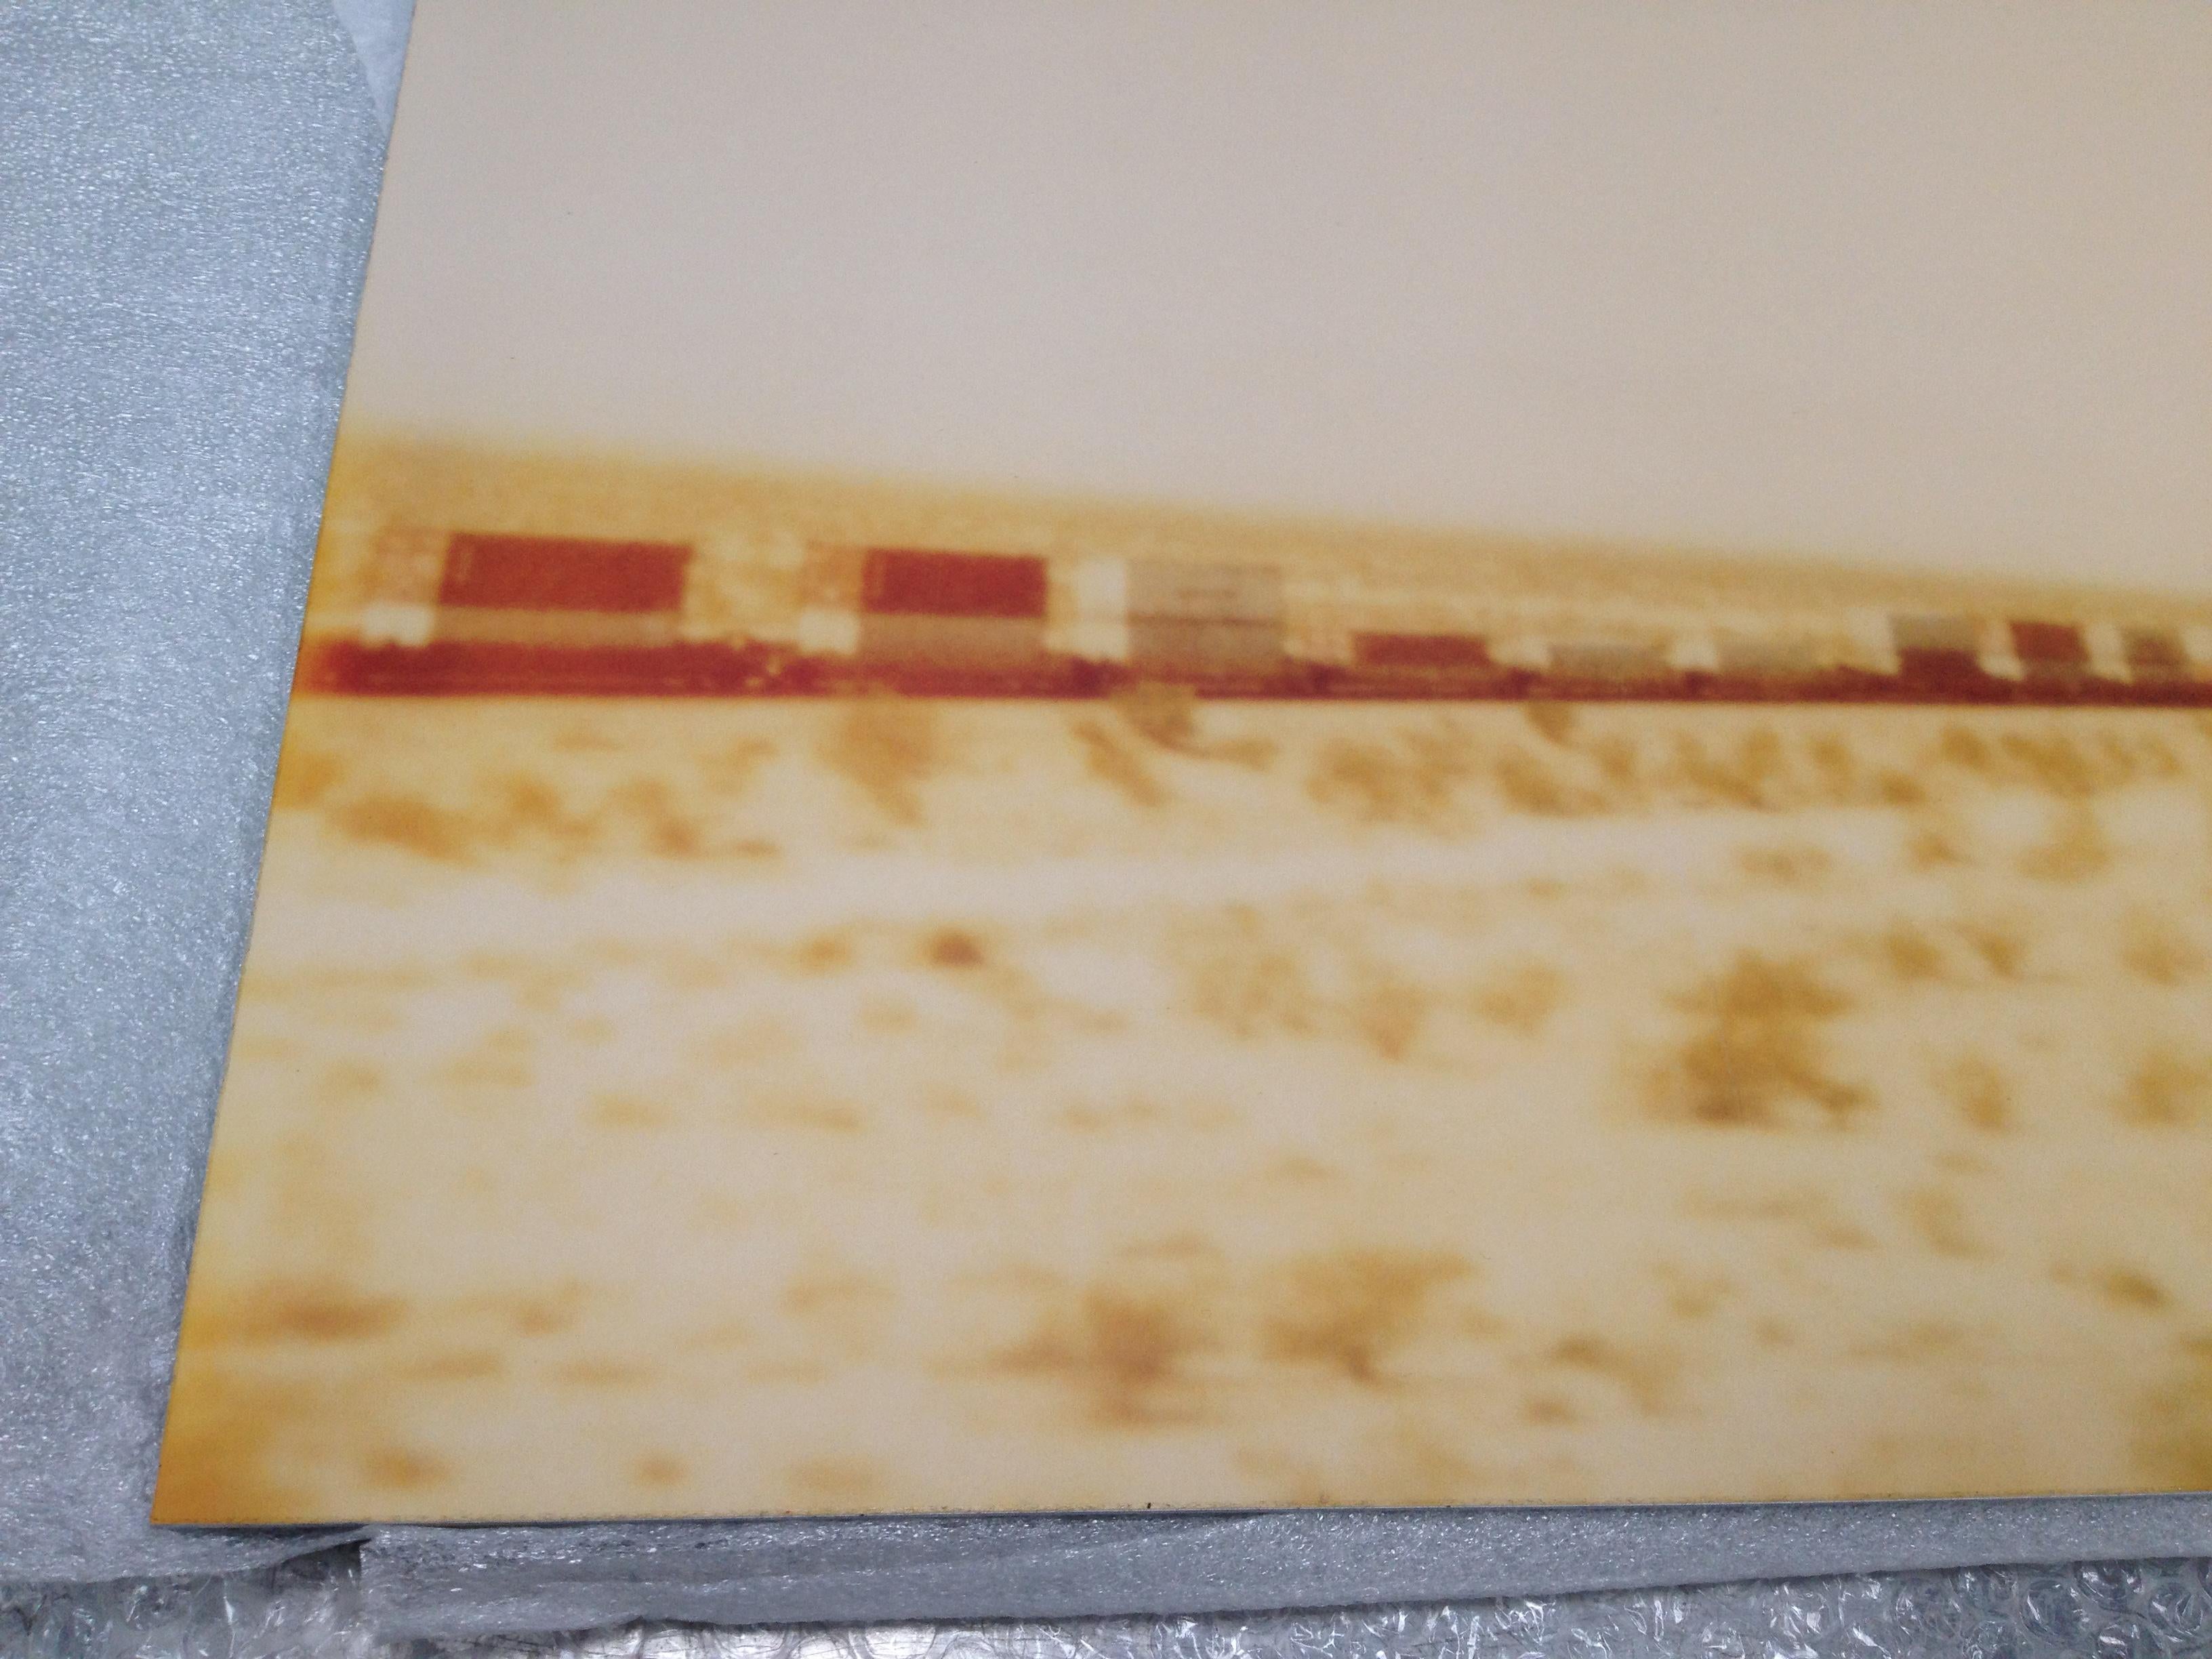 Trains traversant la plaine (Wastelands) 
Edition 2/5, 55x72cm, 1999,
C-print analogique, imprimé à la main par l'artiste sur papier Fuji Crystal Archive,
à partir d'un polaroïd périmé, 
Numéro d'inventaire de l'artiste 544.
Monté sur aluminium avec